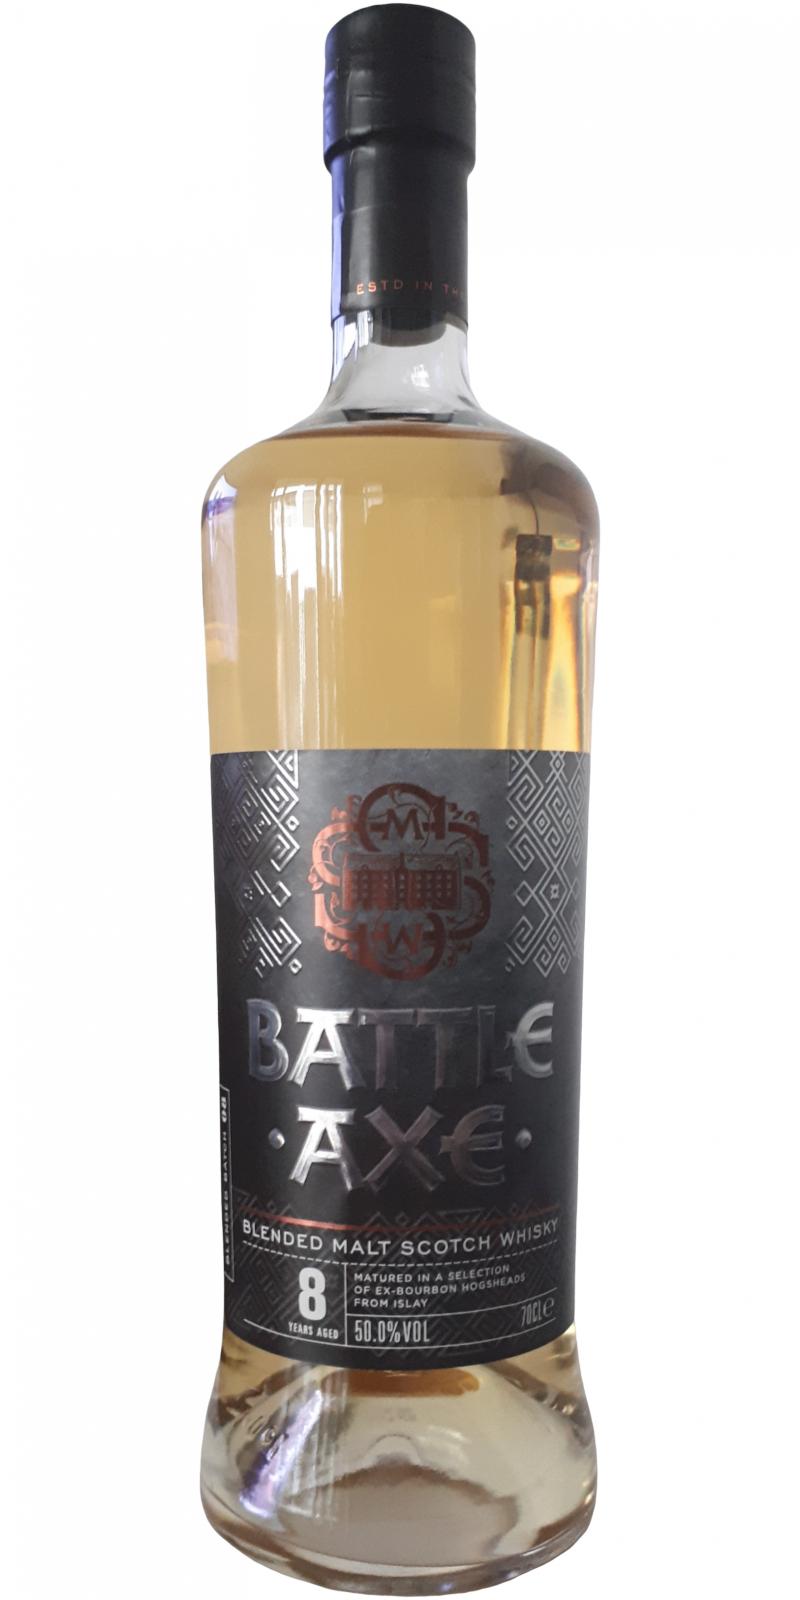 Blended Malt Scotch Whisky 2011 Battle Axe SMWS